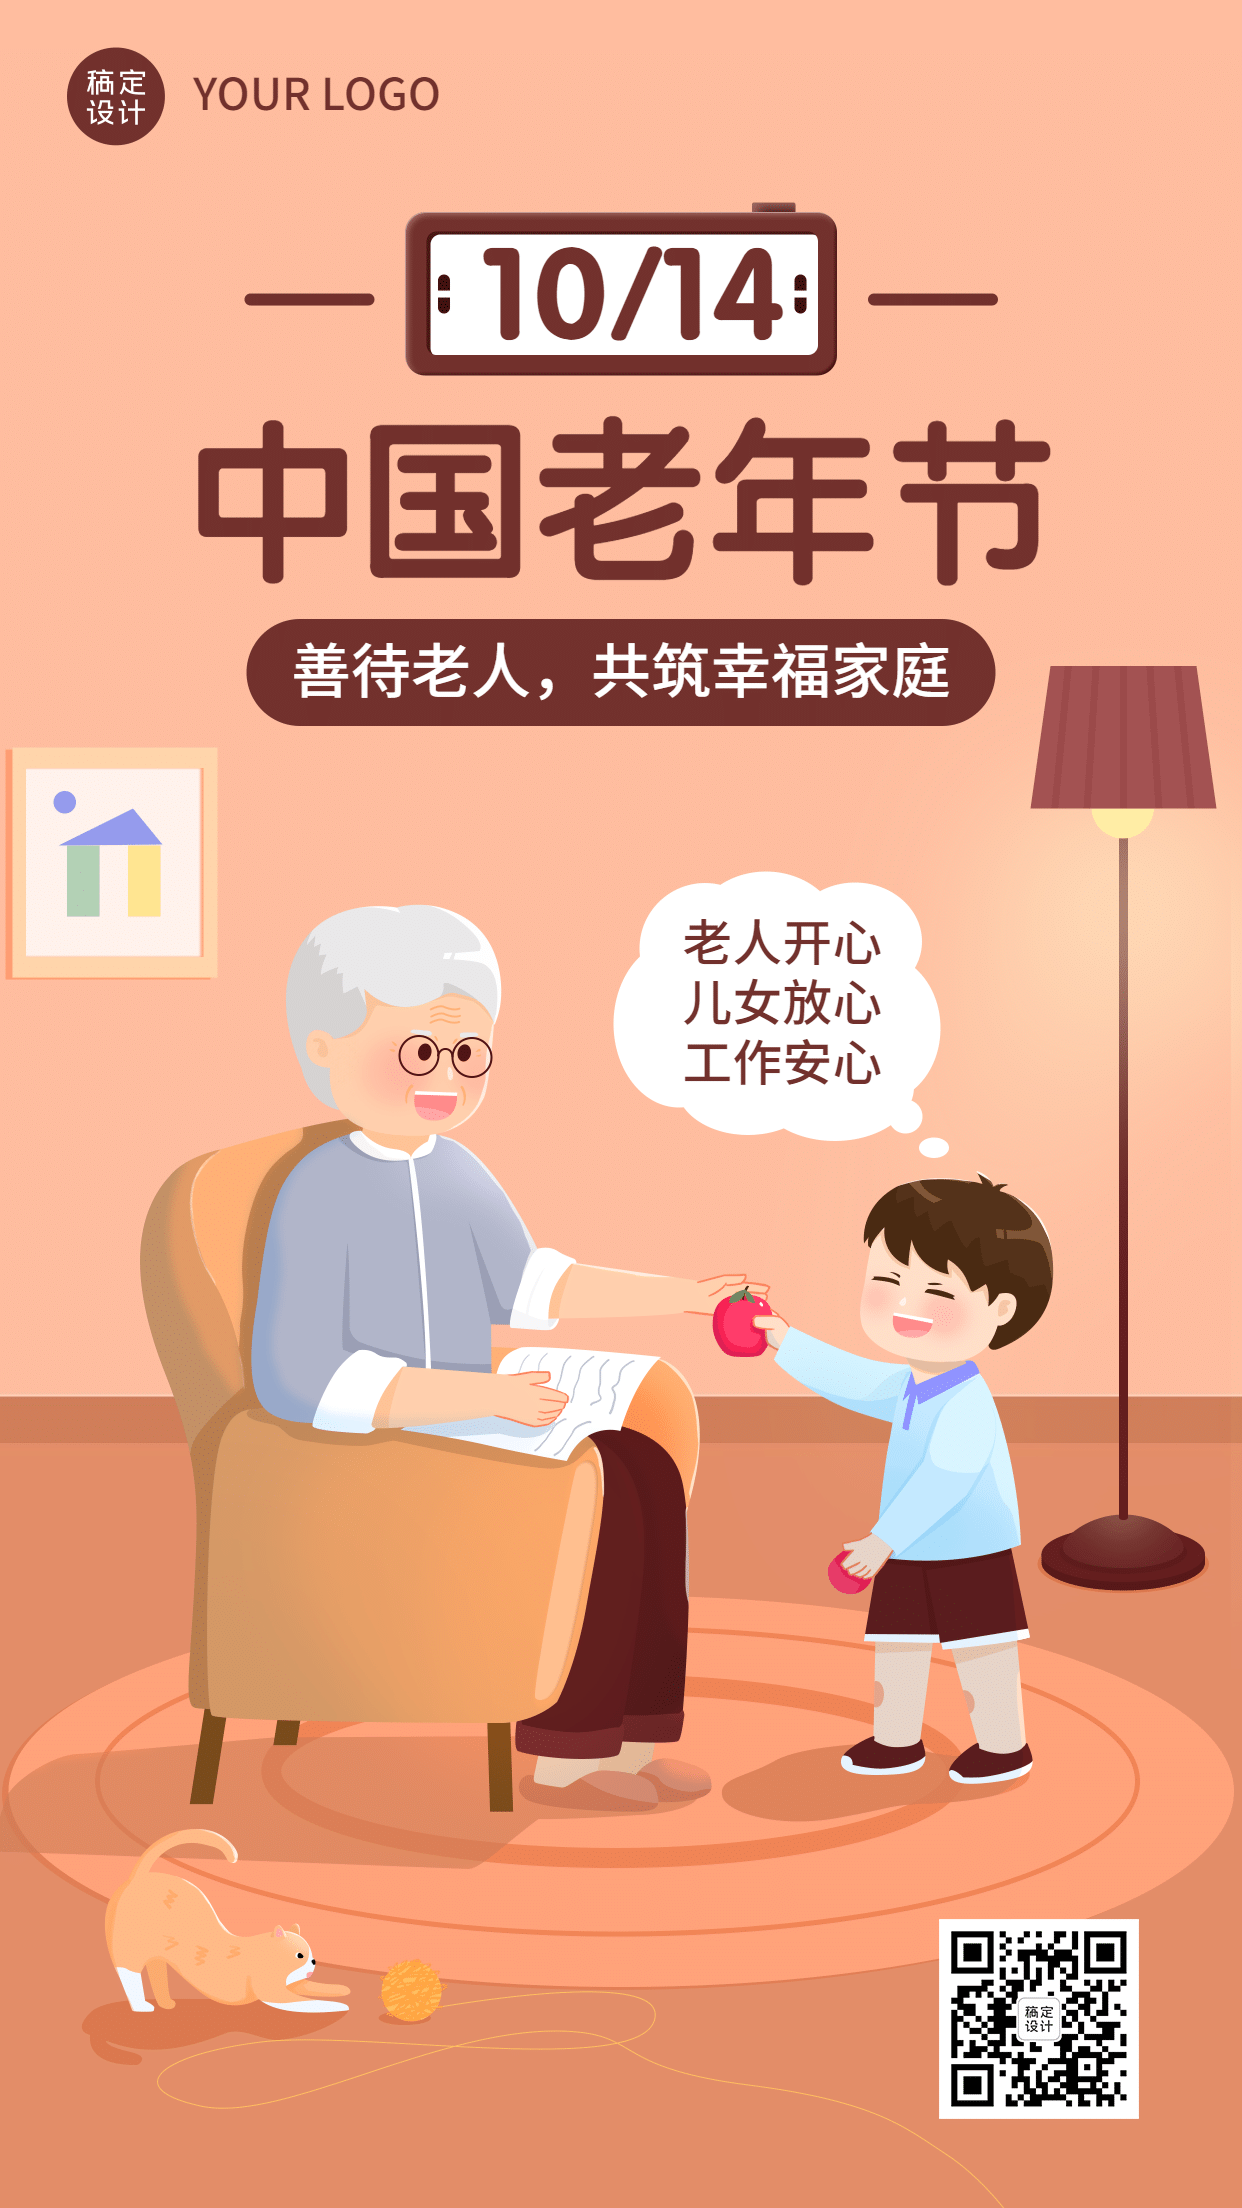 中国老年节敬爱老人关注老人海报预览效果